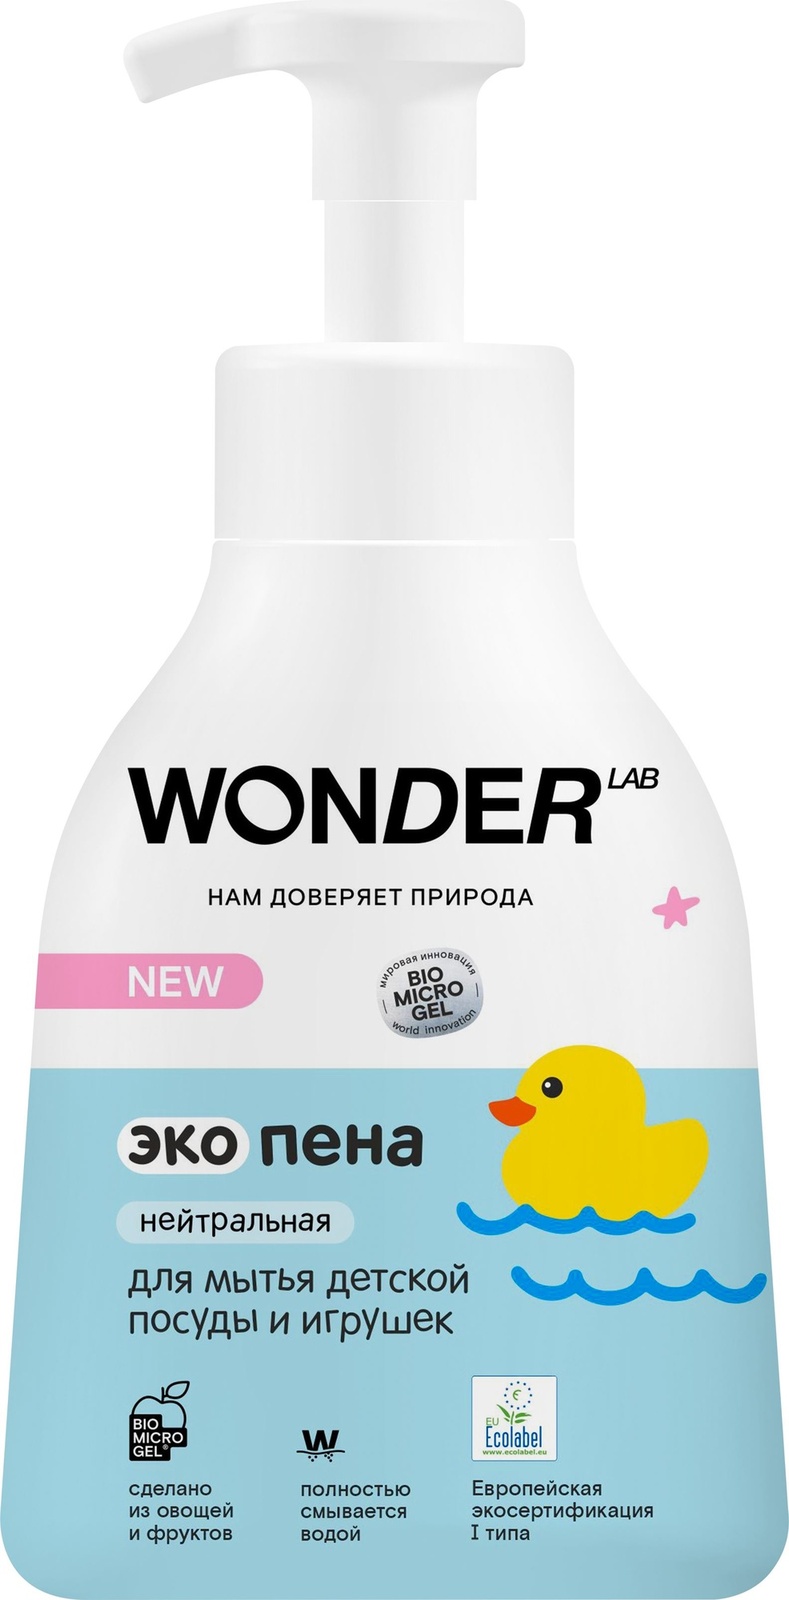 цена Wonder lab Wonder lab экопена для мытья детской посуды и игрушек (нейтральная) (450 мл)